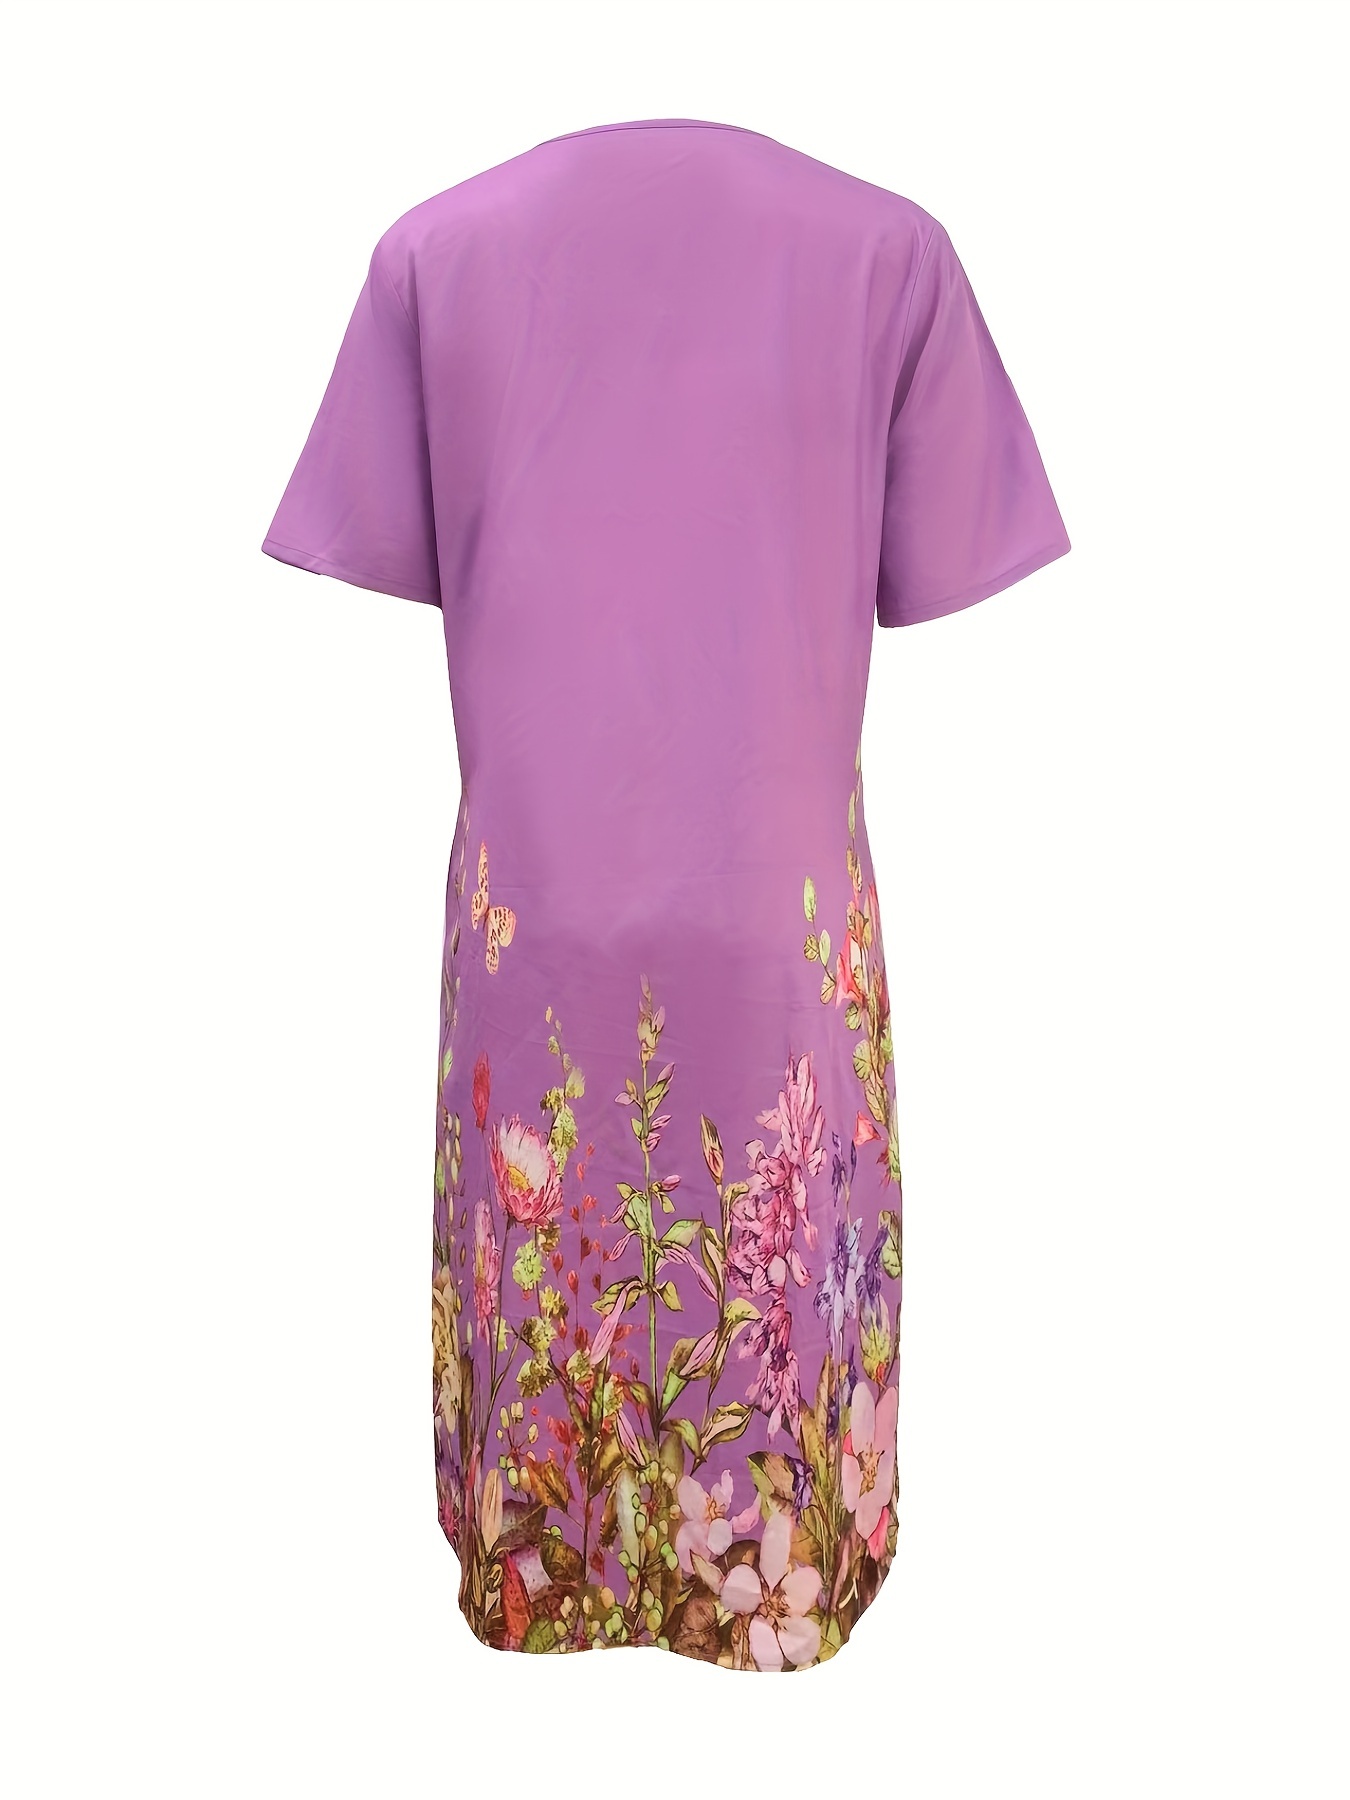 Vestido frontal plissado com estampa floral, vestido casual manga curta com dois bolsos, roupas femininas